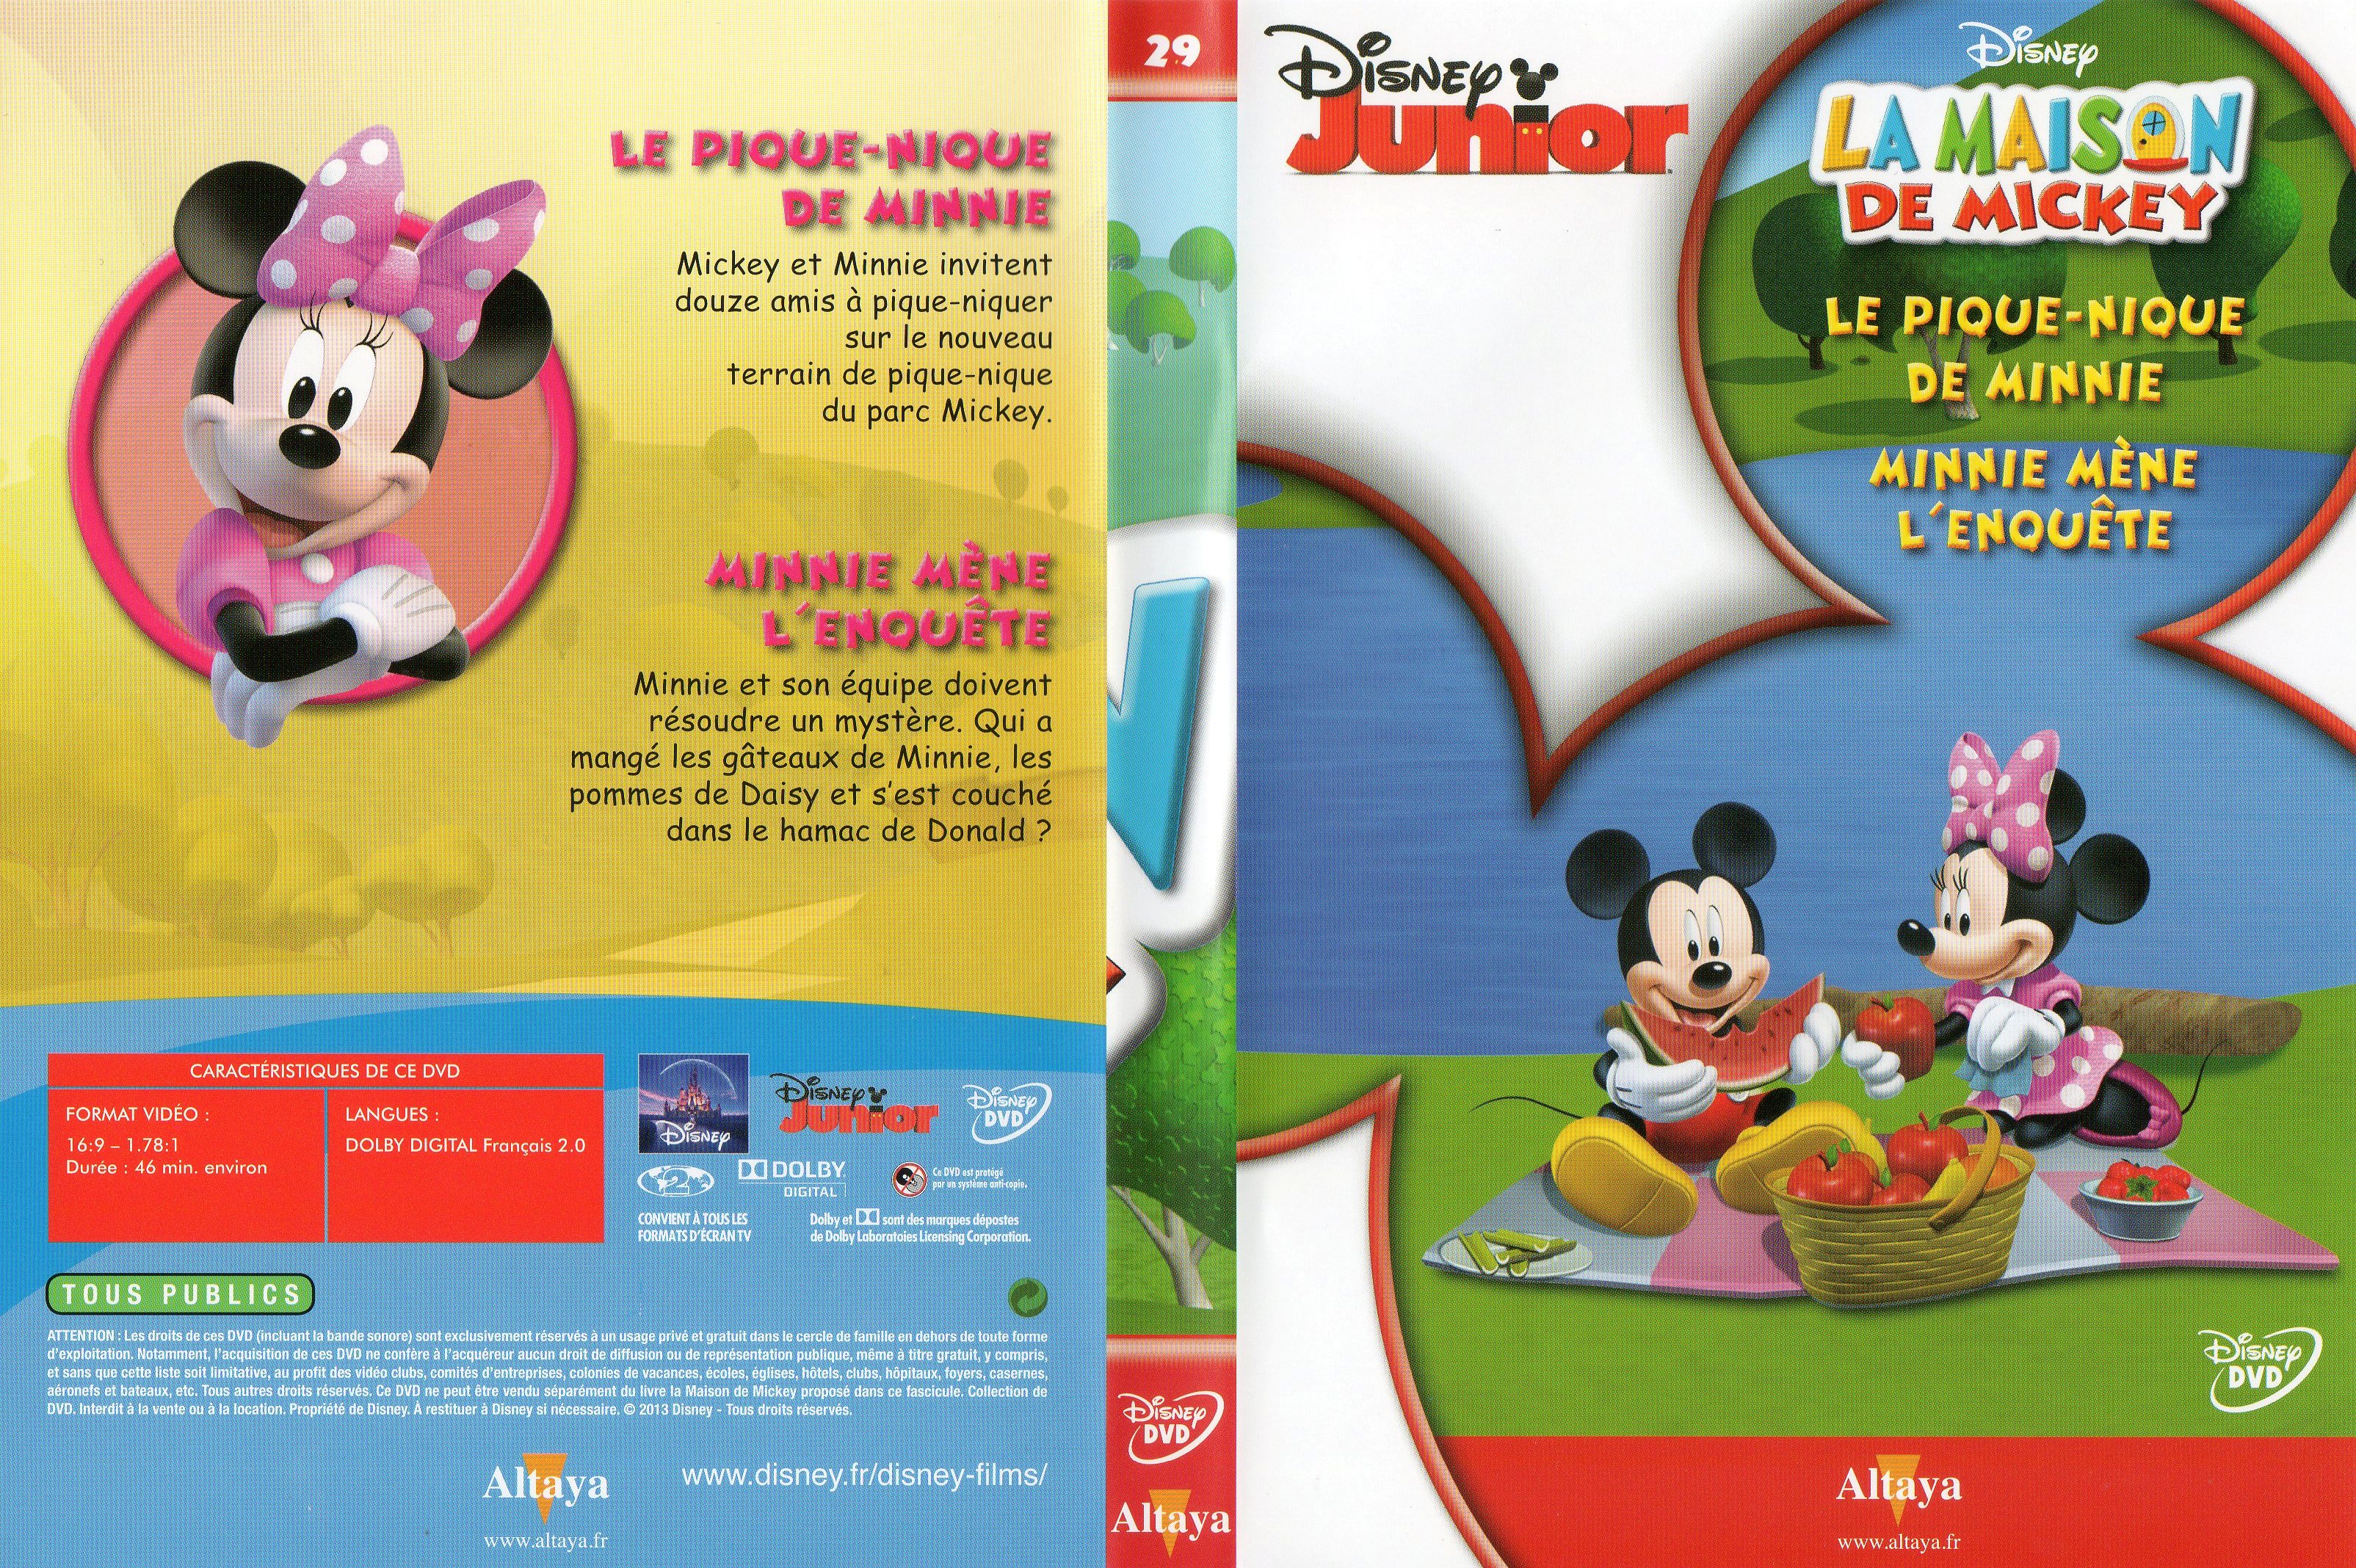 Jaquette DVD La maison de Mickey DVD 29